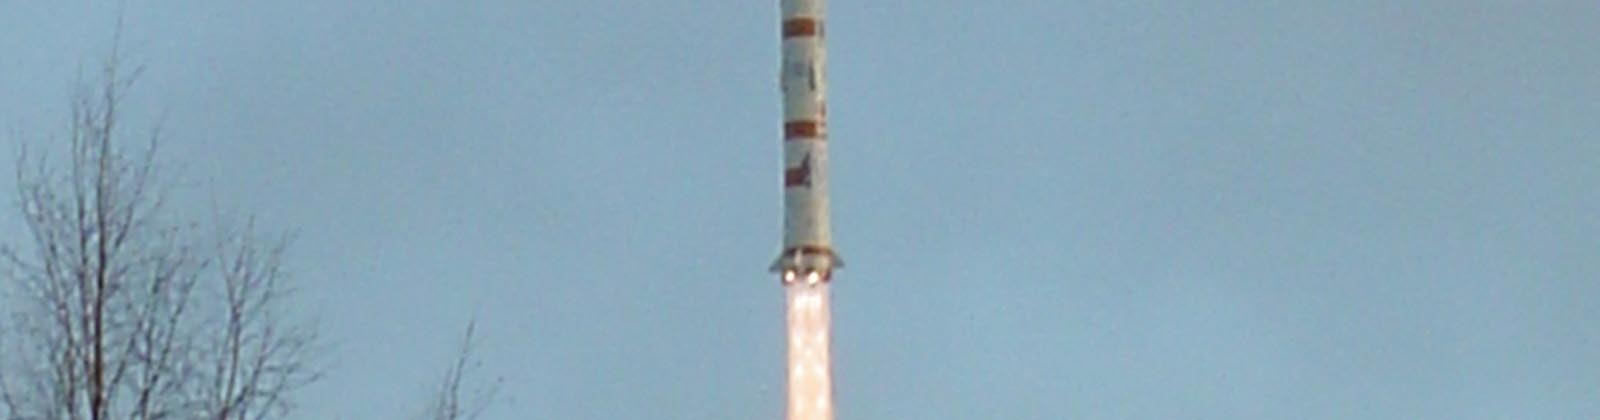 Lancement d'une fusée Kosmos